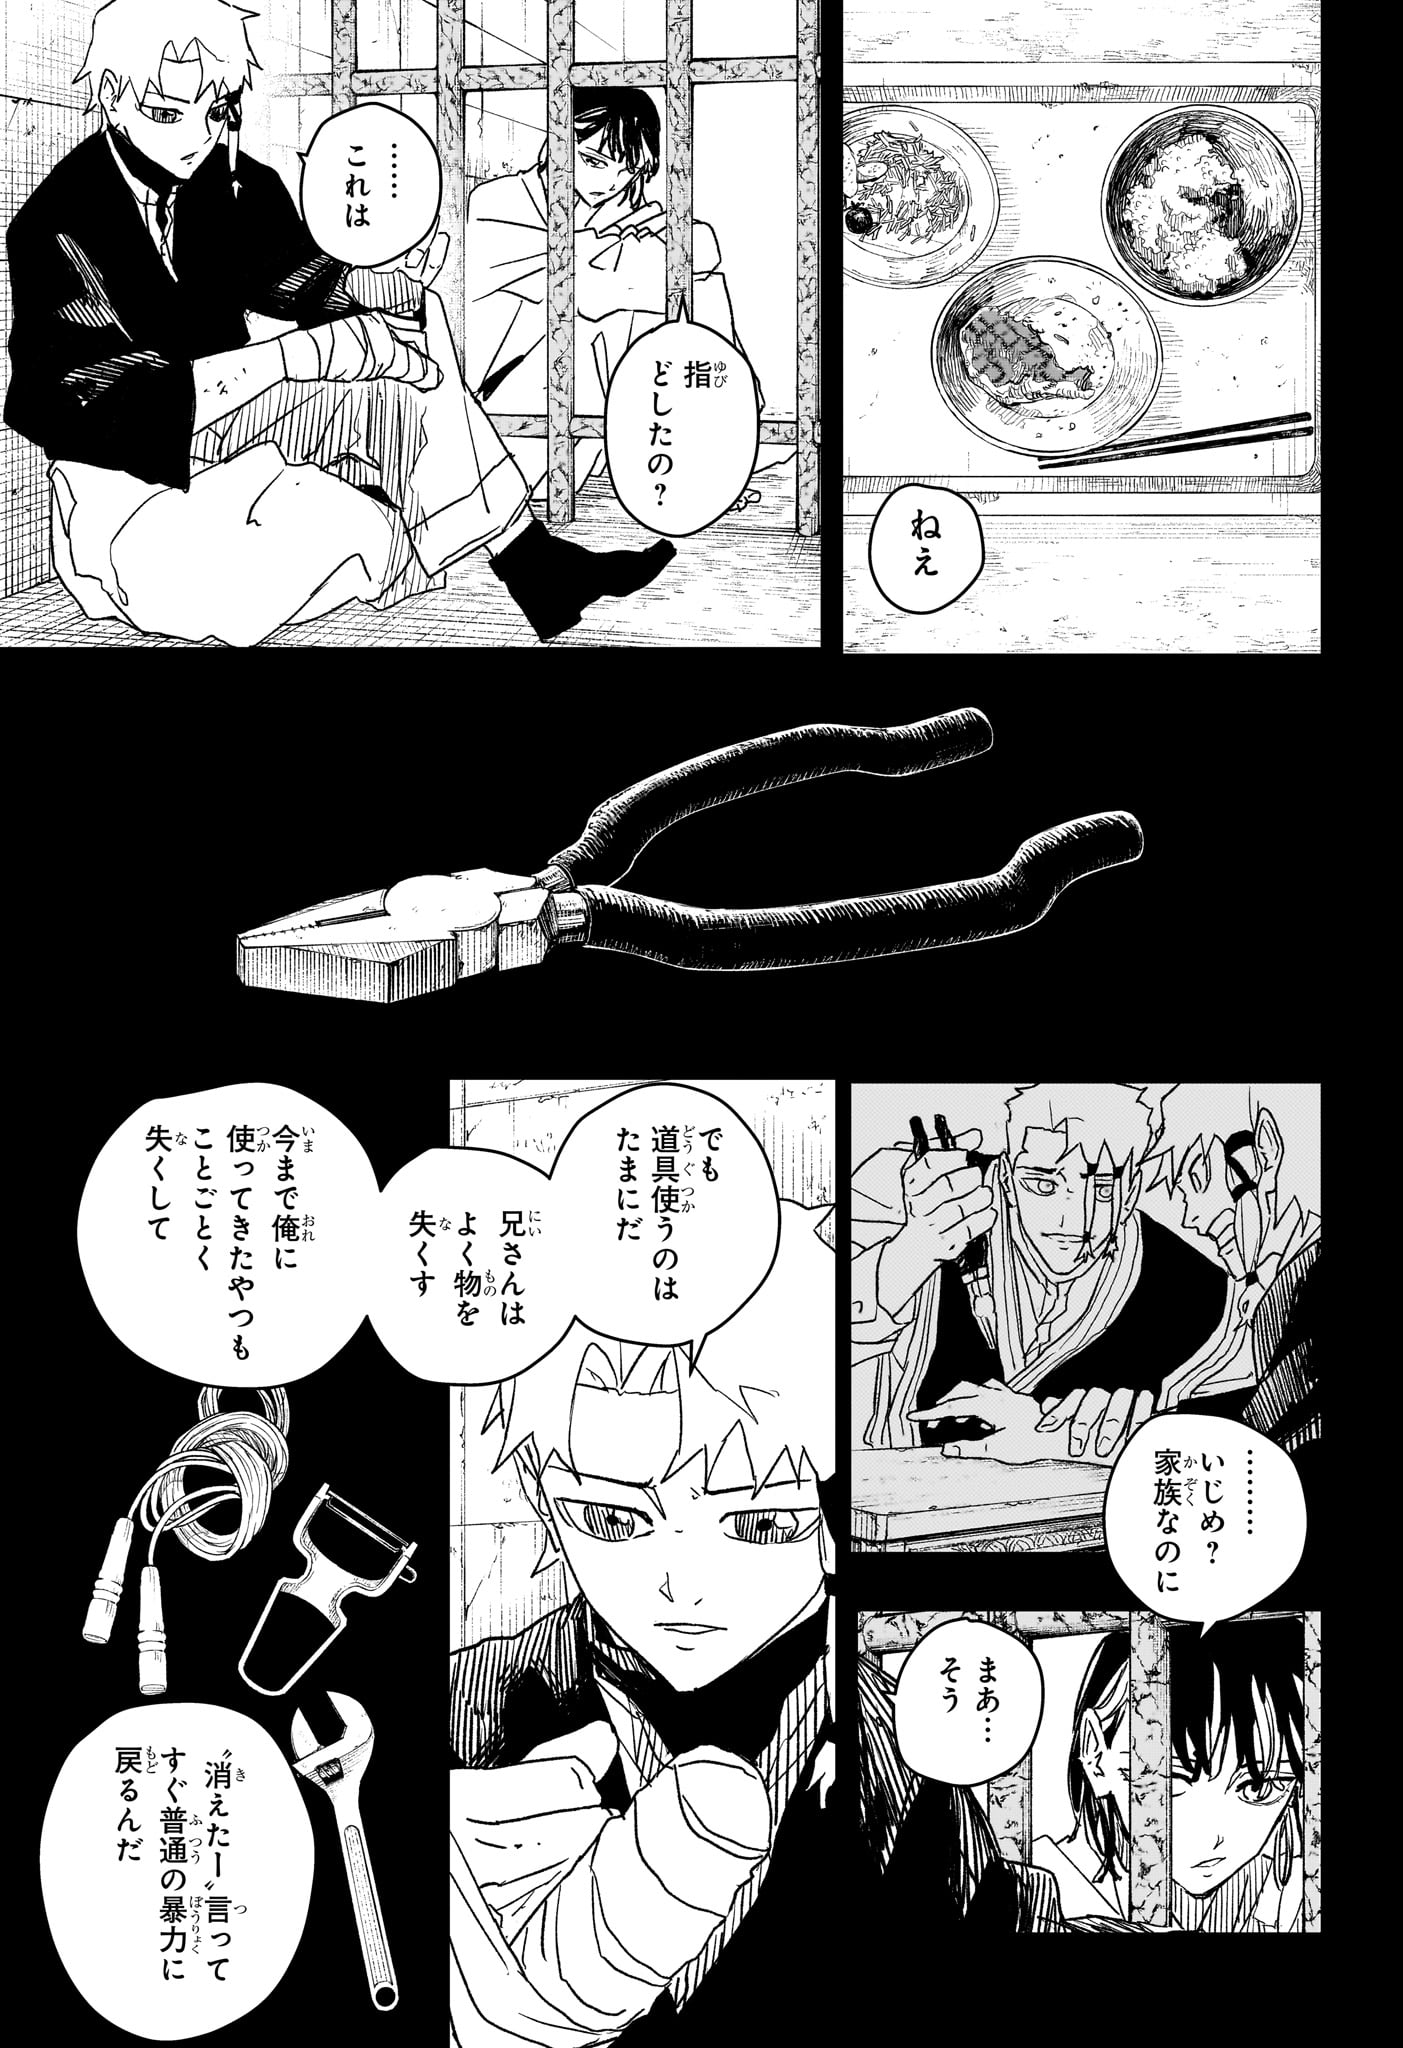 Kagurabachi - Chapter 35 - Page 5